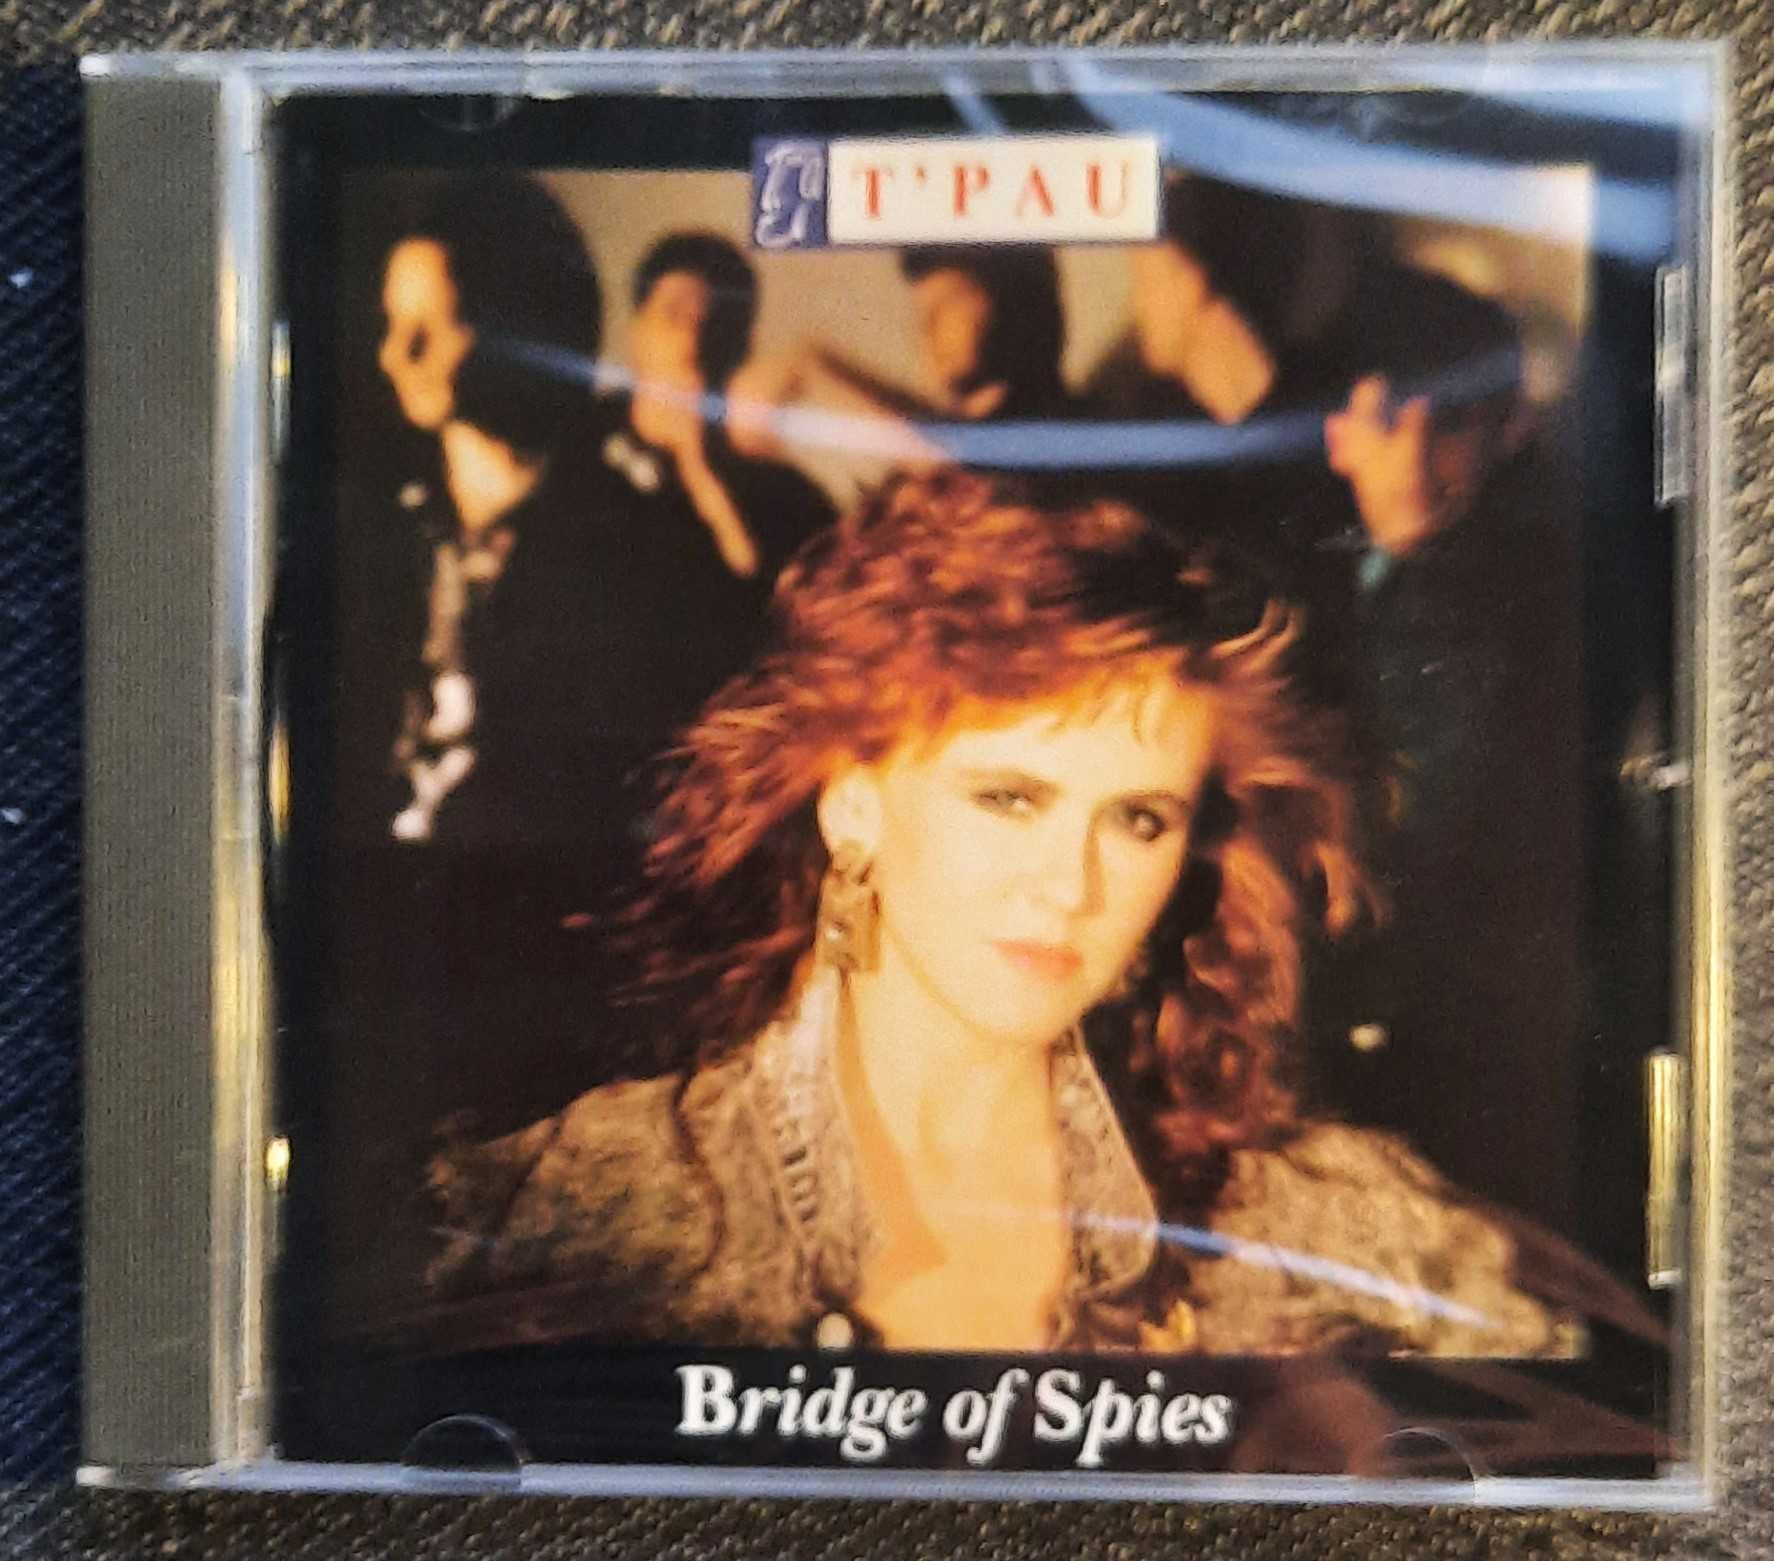 Polecam Kultowy Album CD Zespołu  T'PAU -  Album Bridge Of Spies